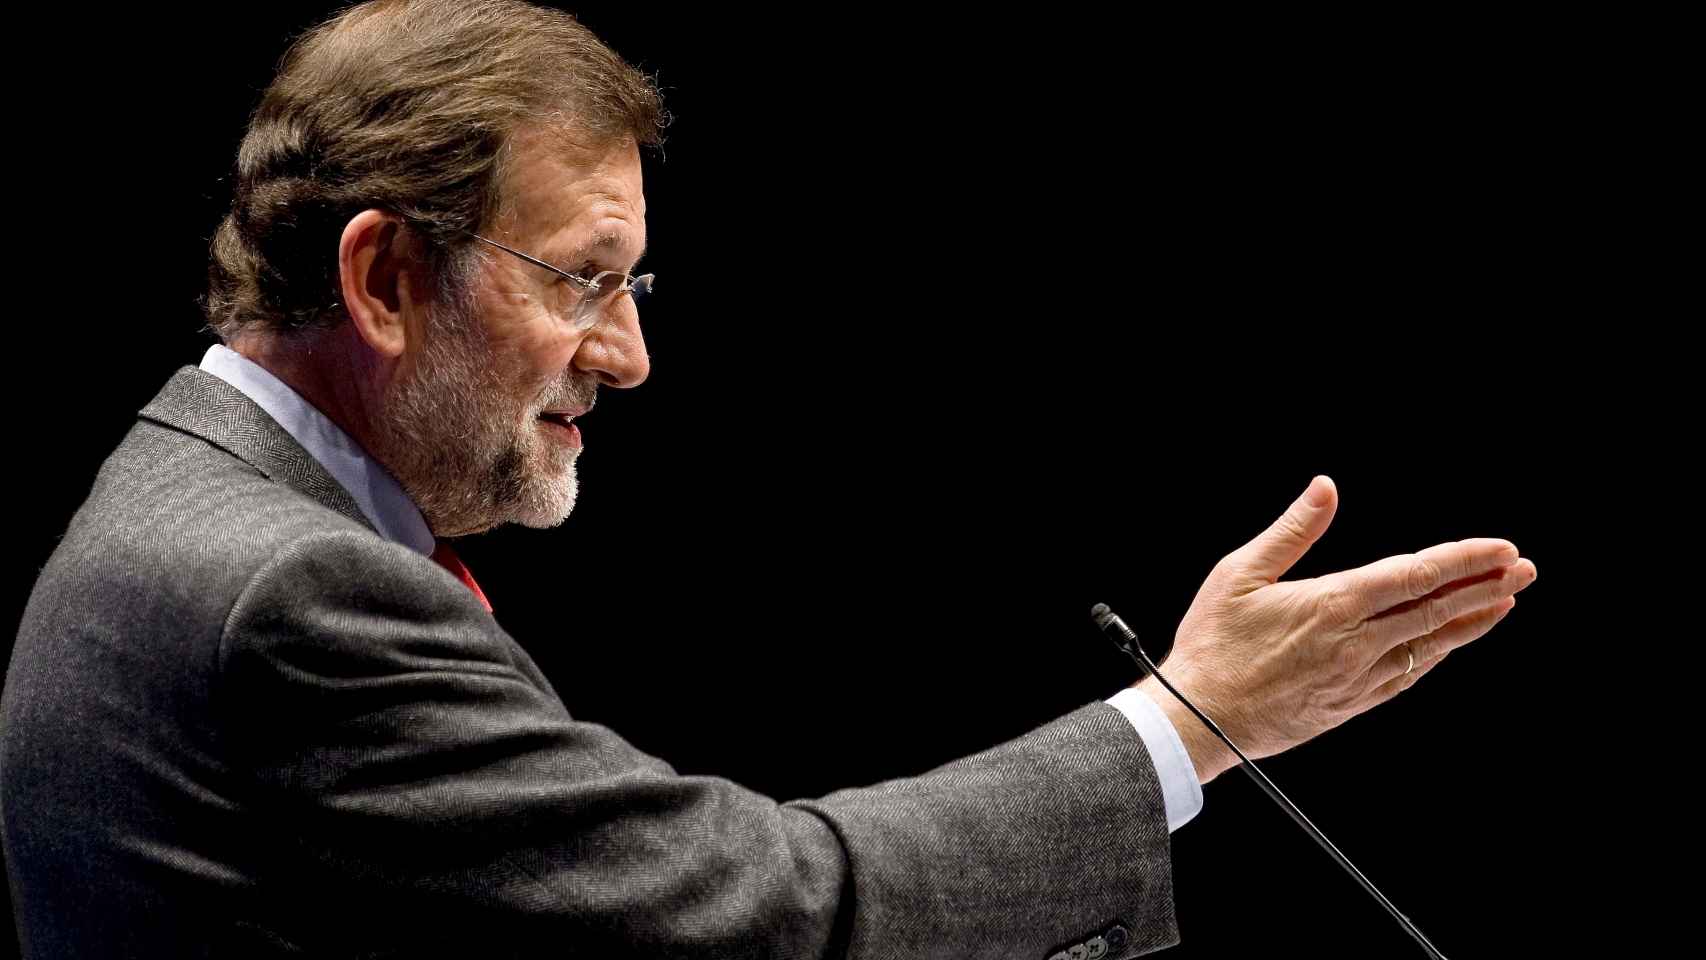 El presidente del Gobierno en funciones, Mariano Rajoy.